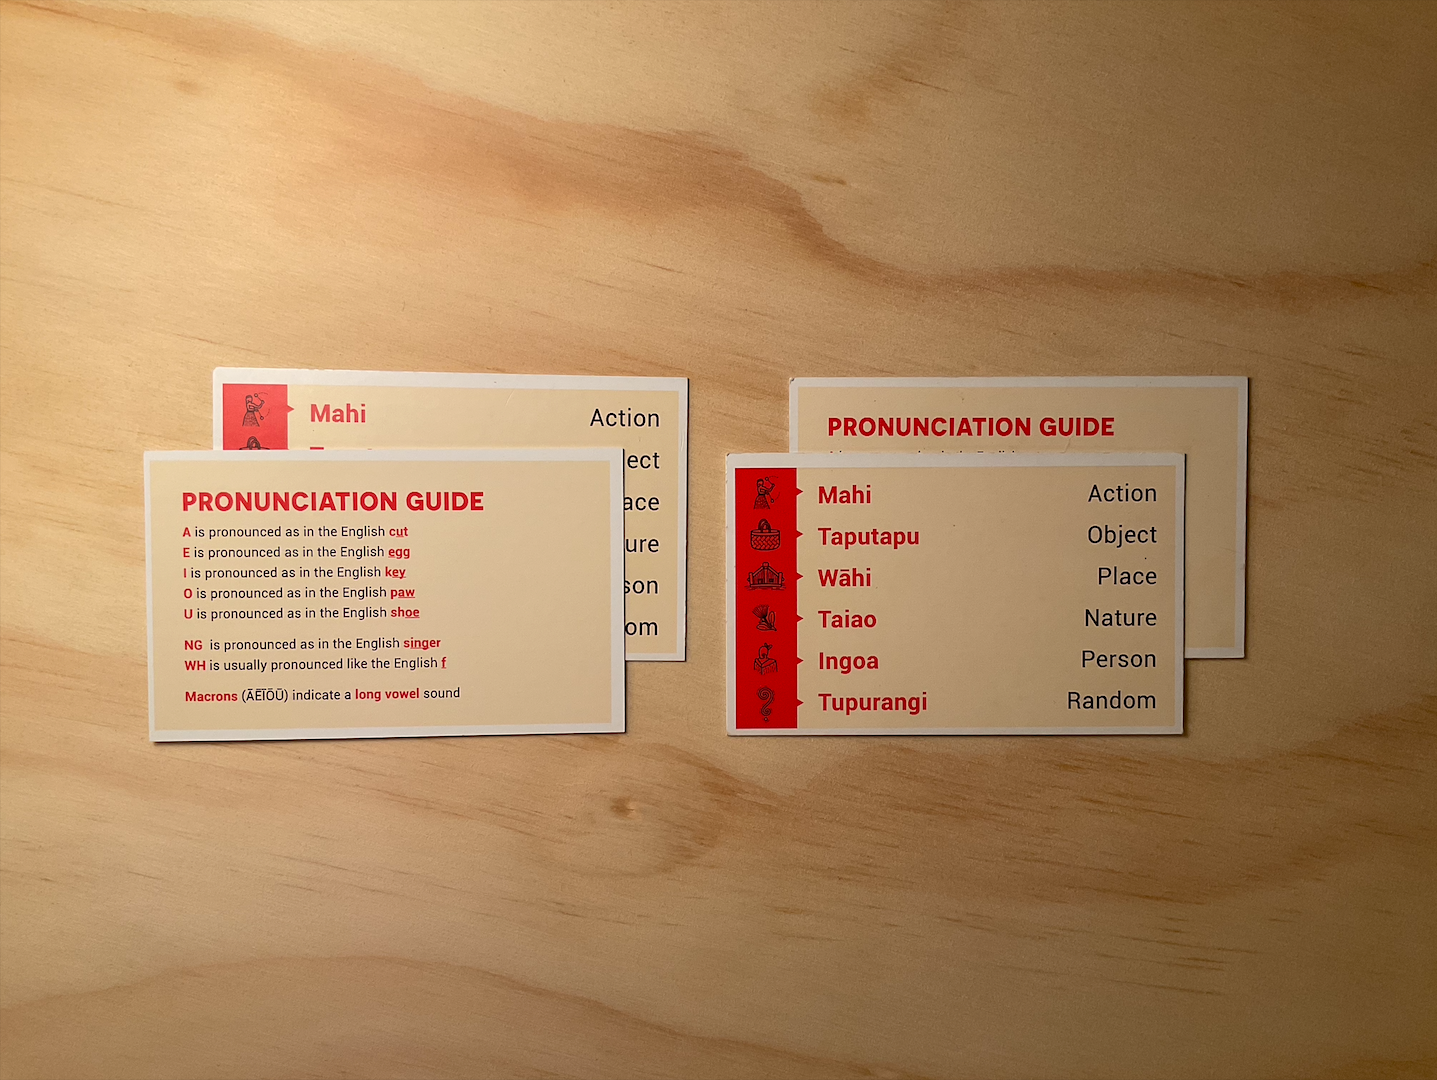 pronunciation guide and category guide card kāri tūtohukaupapa game kura rēhia māori language board game tākaro Māori takaro maimoa creative hemi kelly kuruho wereta rosie remmerswaal play language revitalisation whakahua